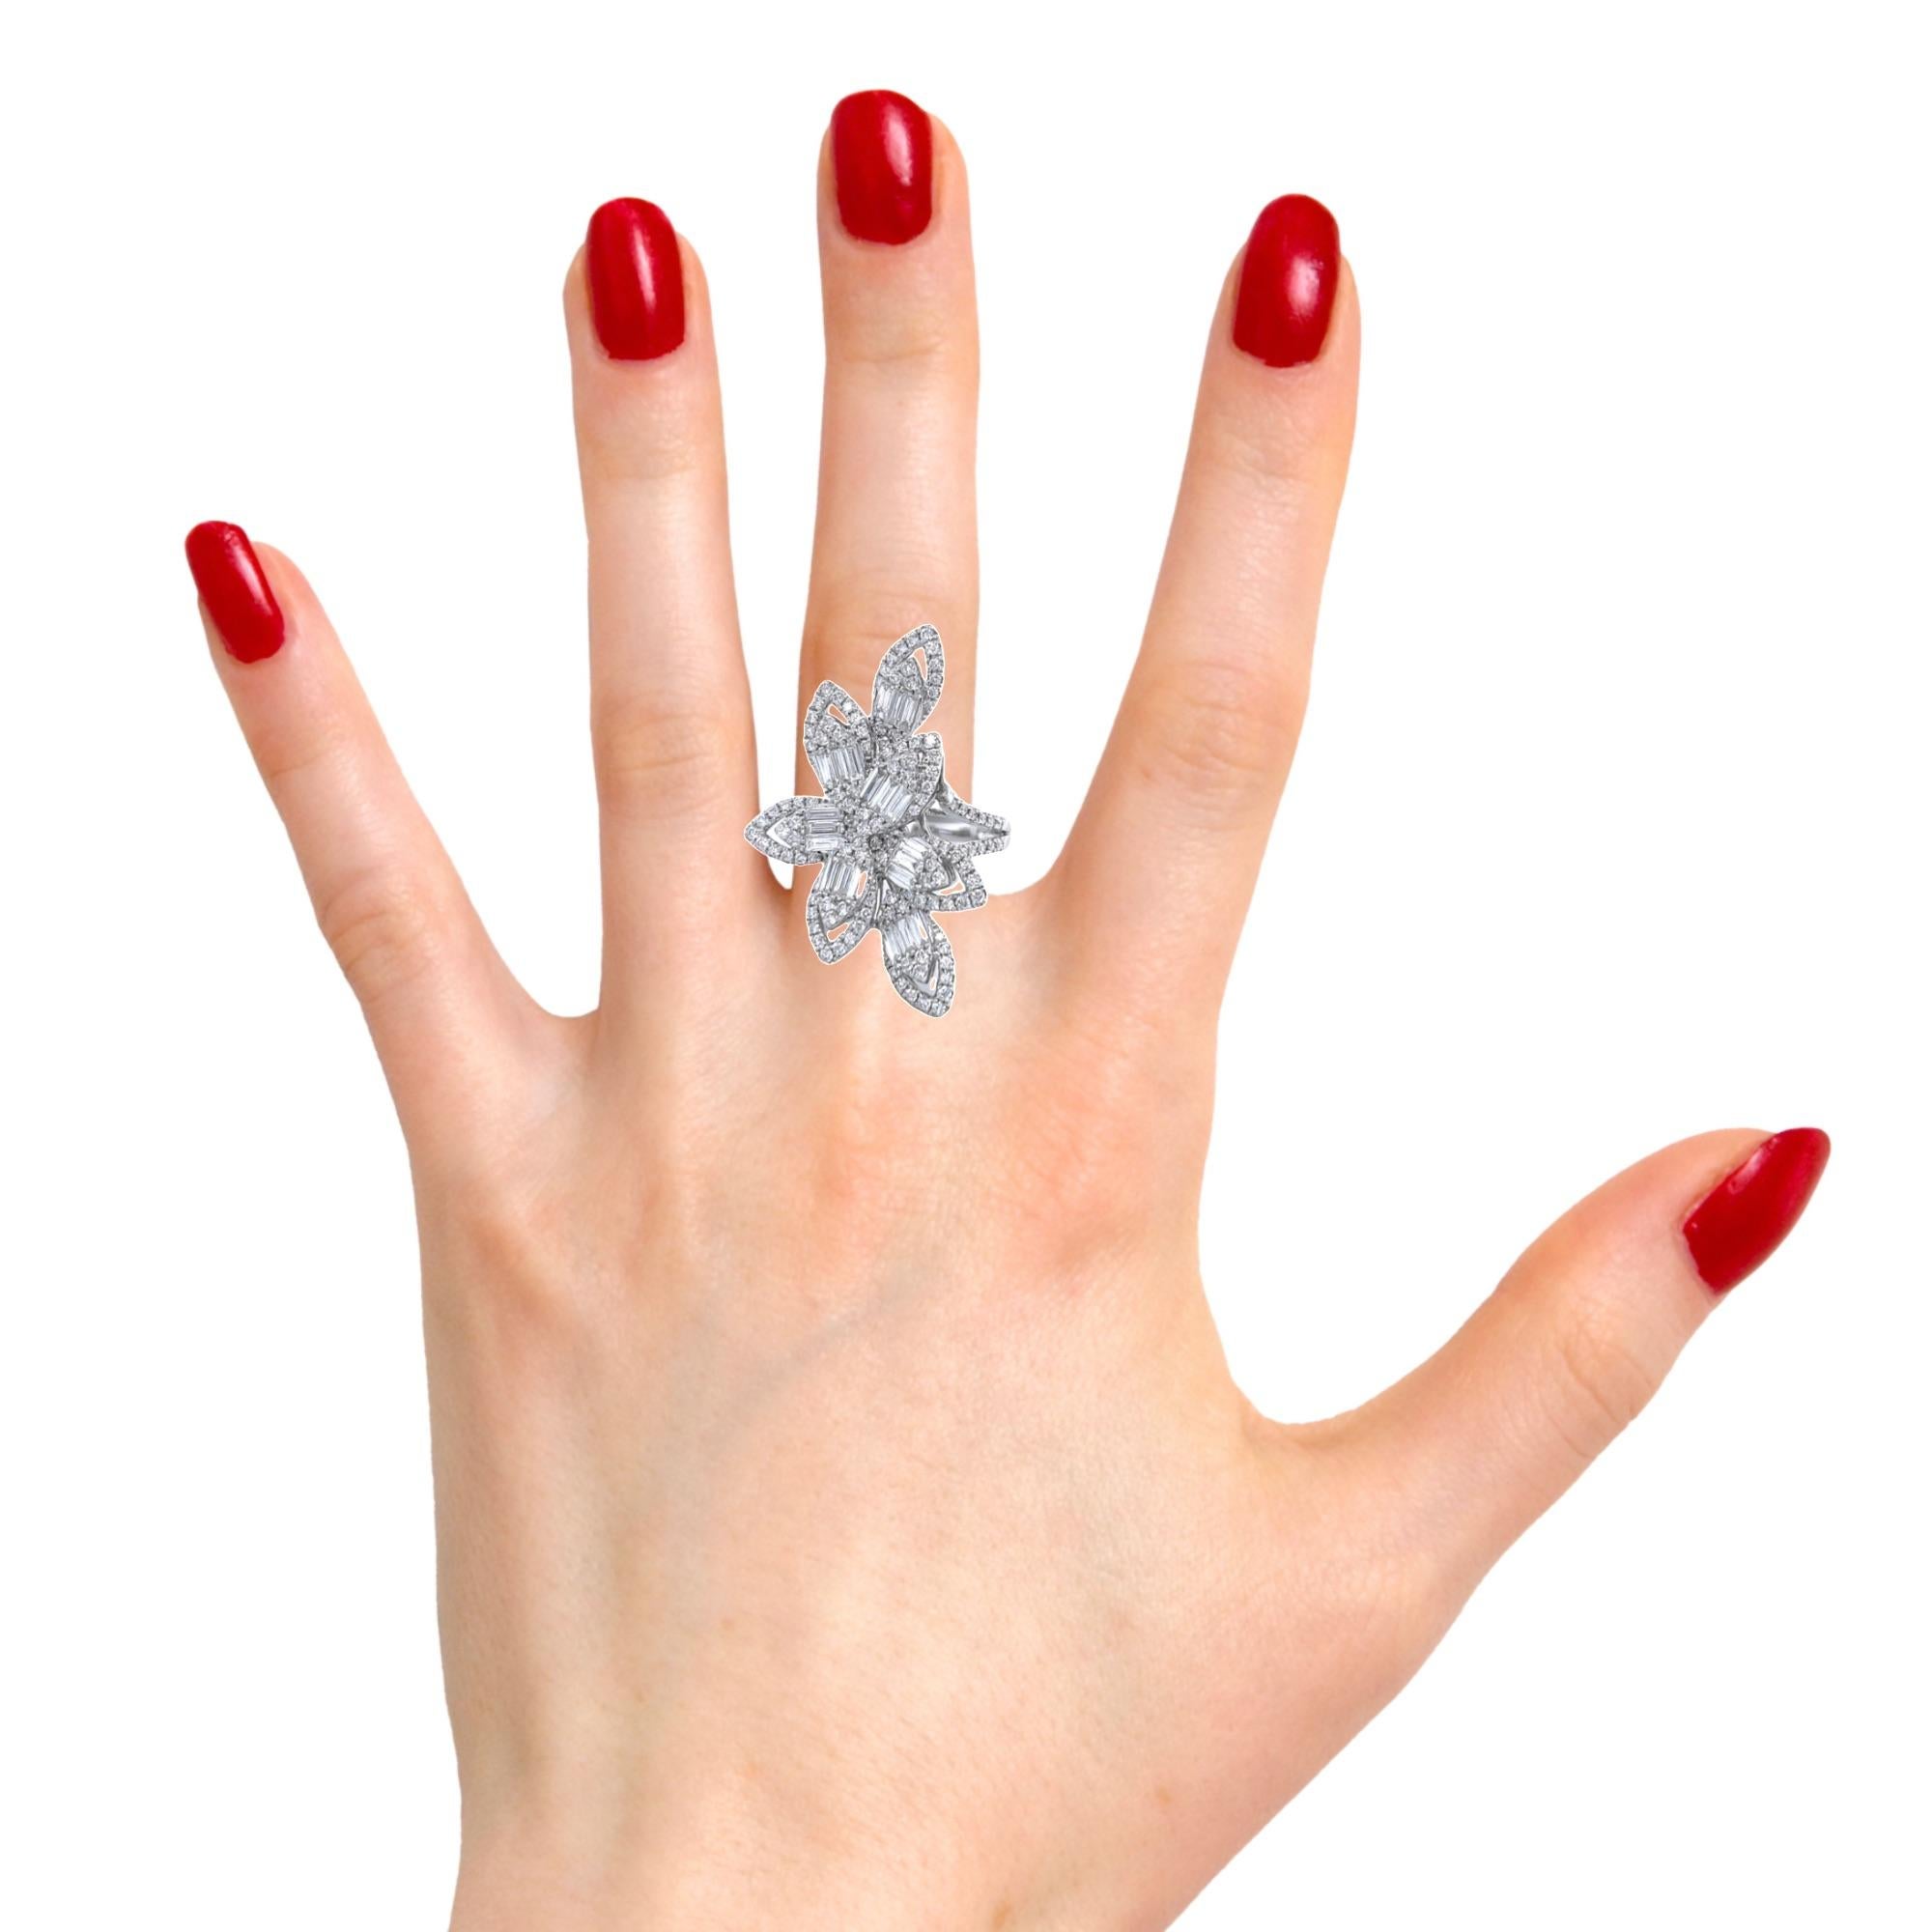 Dieser atemberaubende Diamant-Cocktailring hat 140 runde Diamanten im Brillantschliff und 21 Baguette-Diamanten, alle in 18 Karat Weißgold gefasst. Dieser Ring ist 3,5 Zentimeter lang und 2,5 Zentimeter breit. Es ist definitiv ein Ring, der die